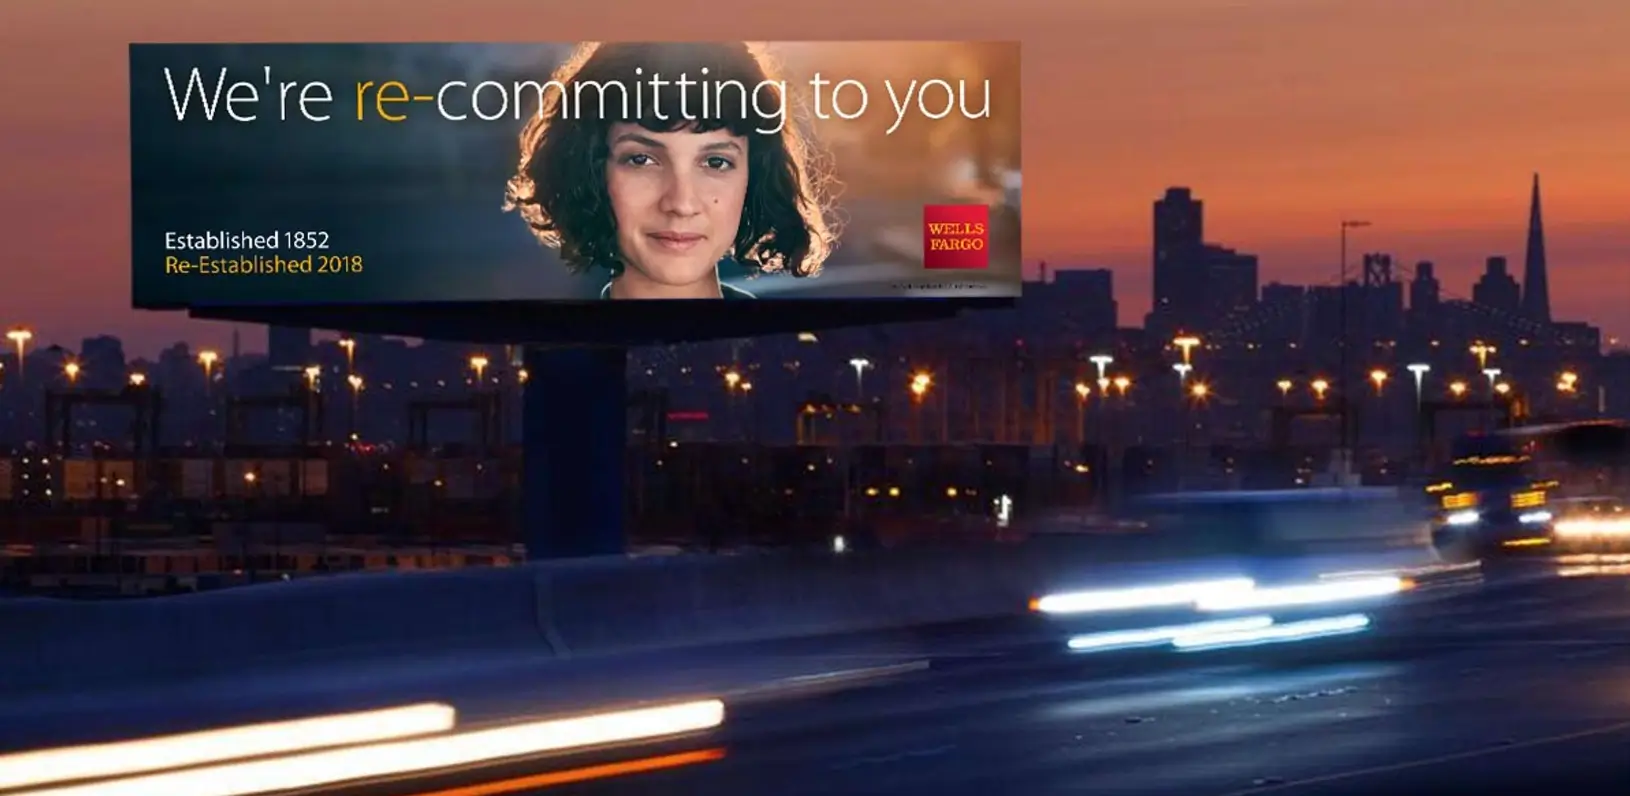 Bu resim, Wells Fargo'nun 2017'den 2019'a kadar başlattığı ve dolandırıcılık iddialarının ardından müşterinin güvenini yeniden kazanmayı amaçlayan "Yeniden Kuruldu" kampanyasını gösteriyor. Rakiplerden farklılaşmak için video, reklam ve sosyal paylaşımları kullanarak yenilikçi teknolojiyi ve kişiselleştirilmiş deneyimleri öne çıkardılar.